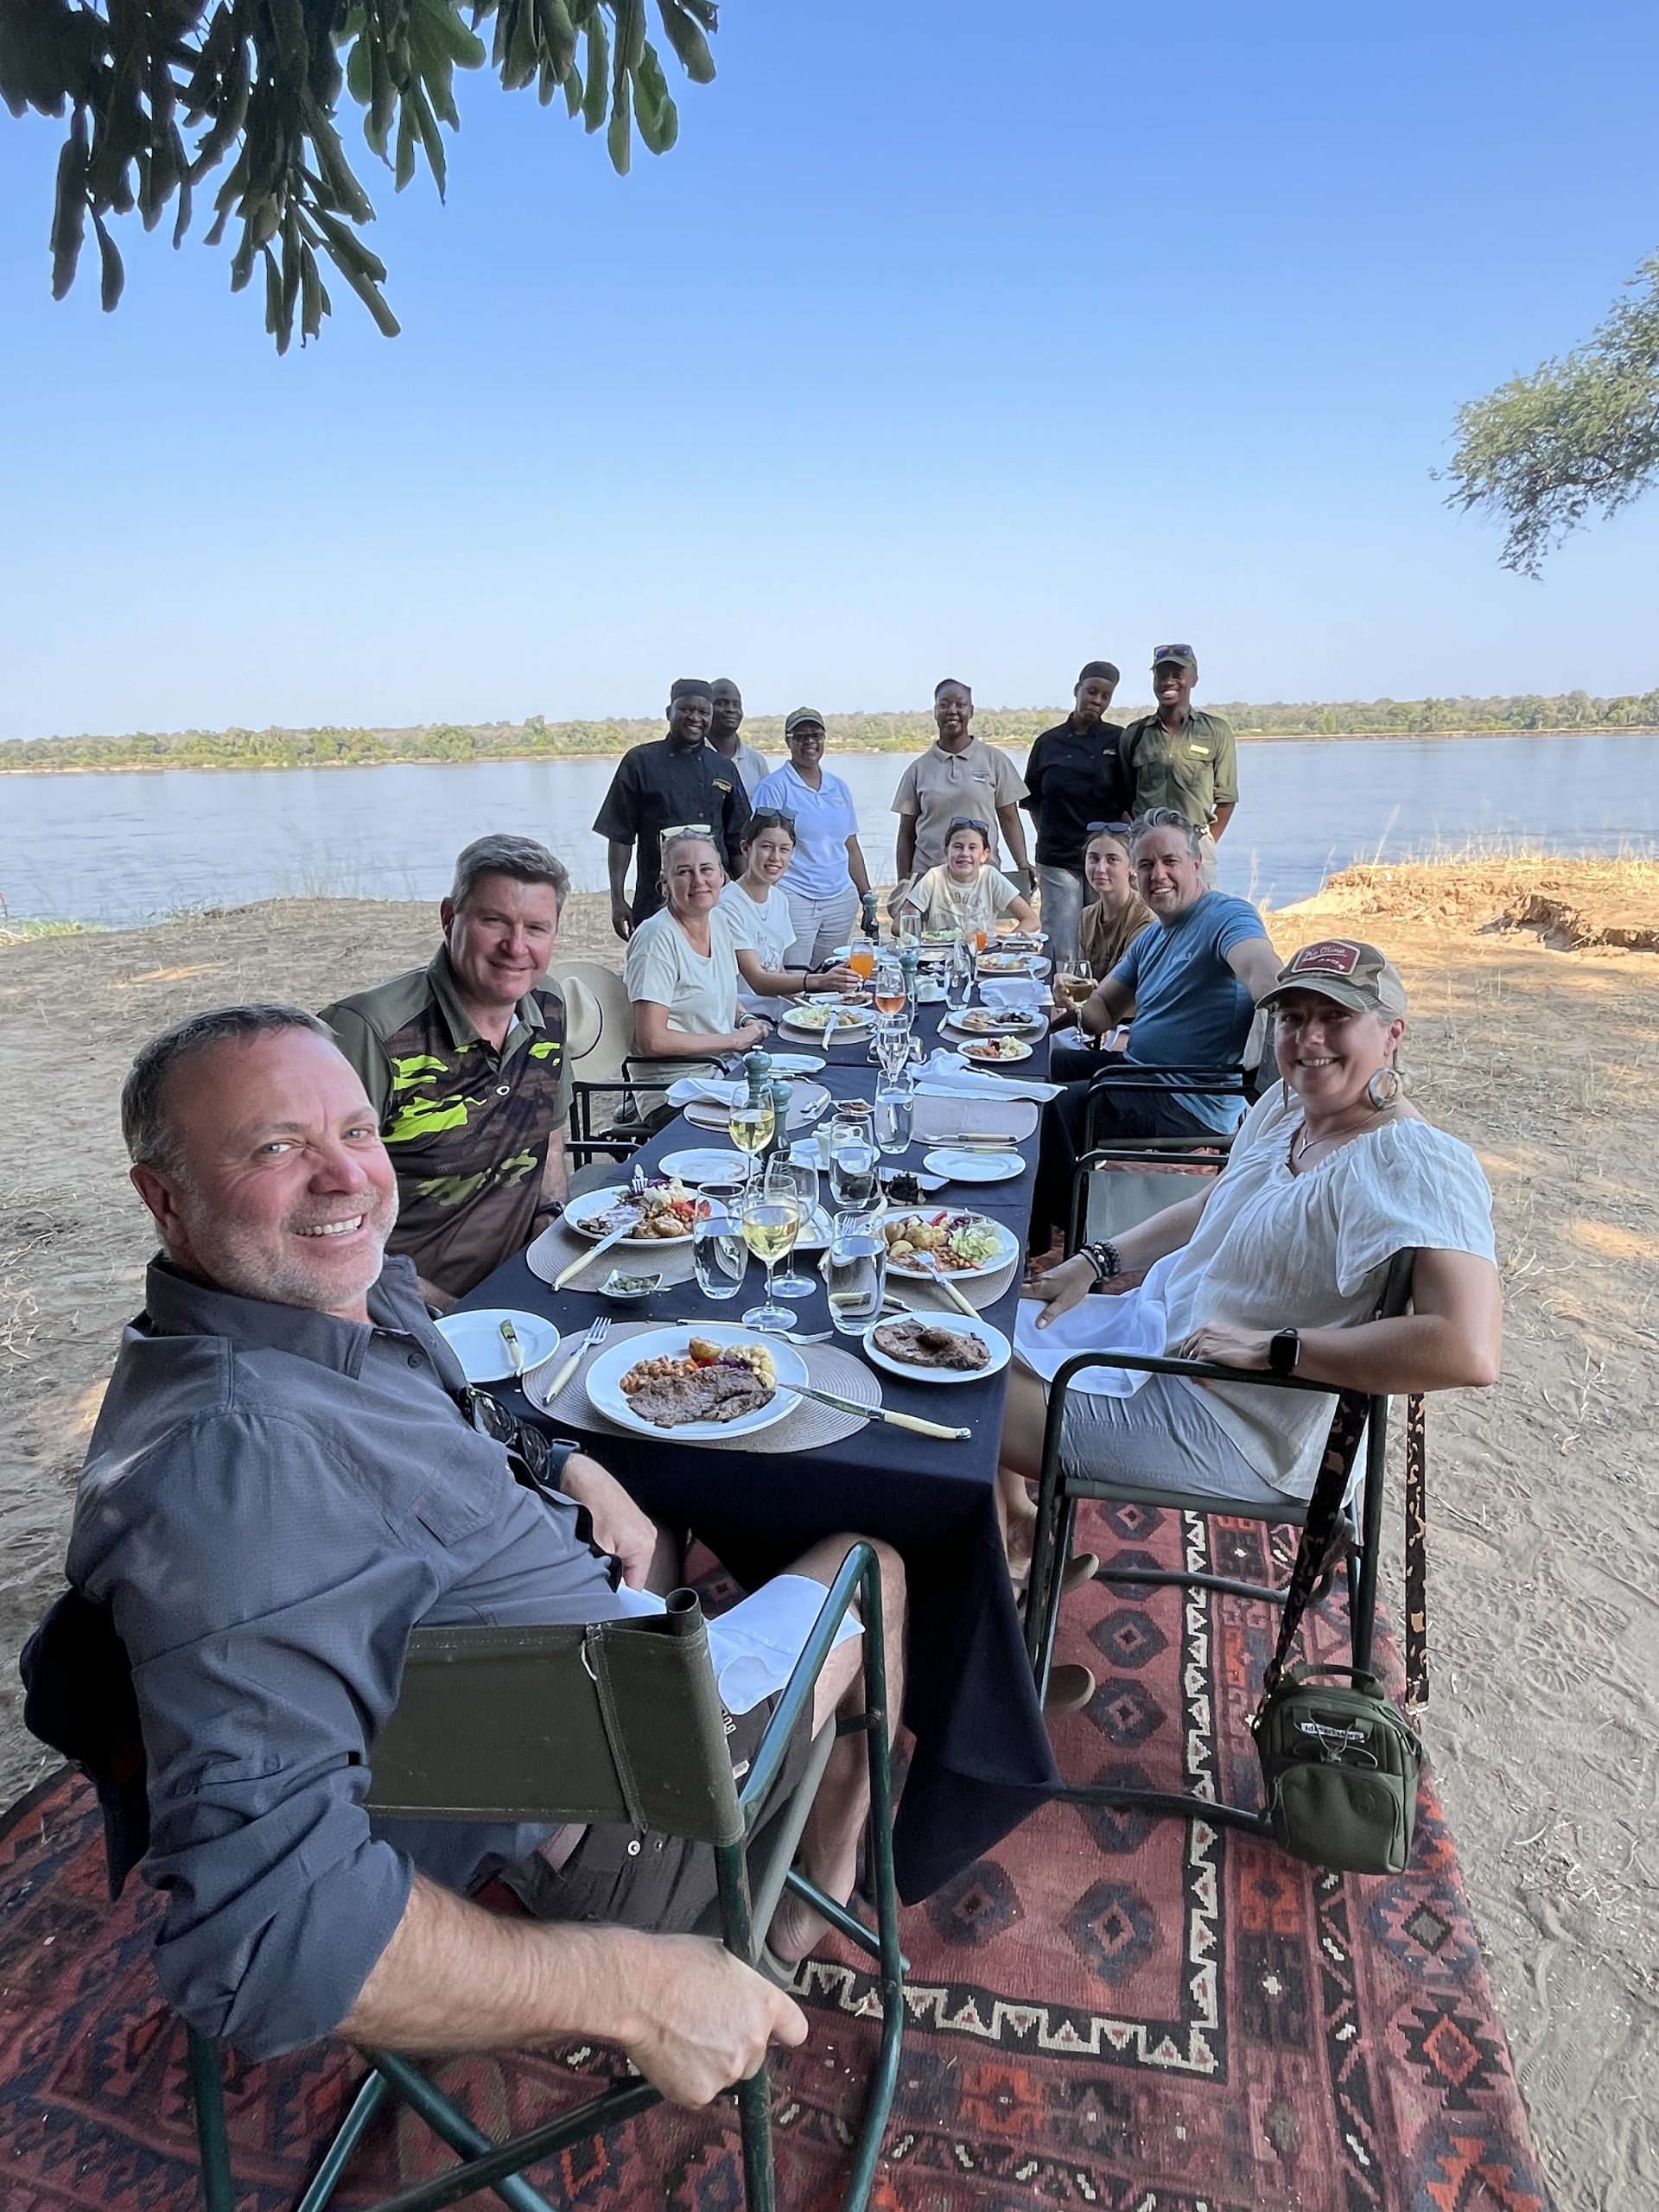 Bush lunch next to Zambezi River